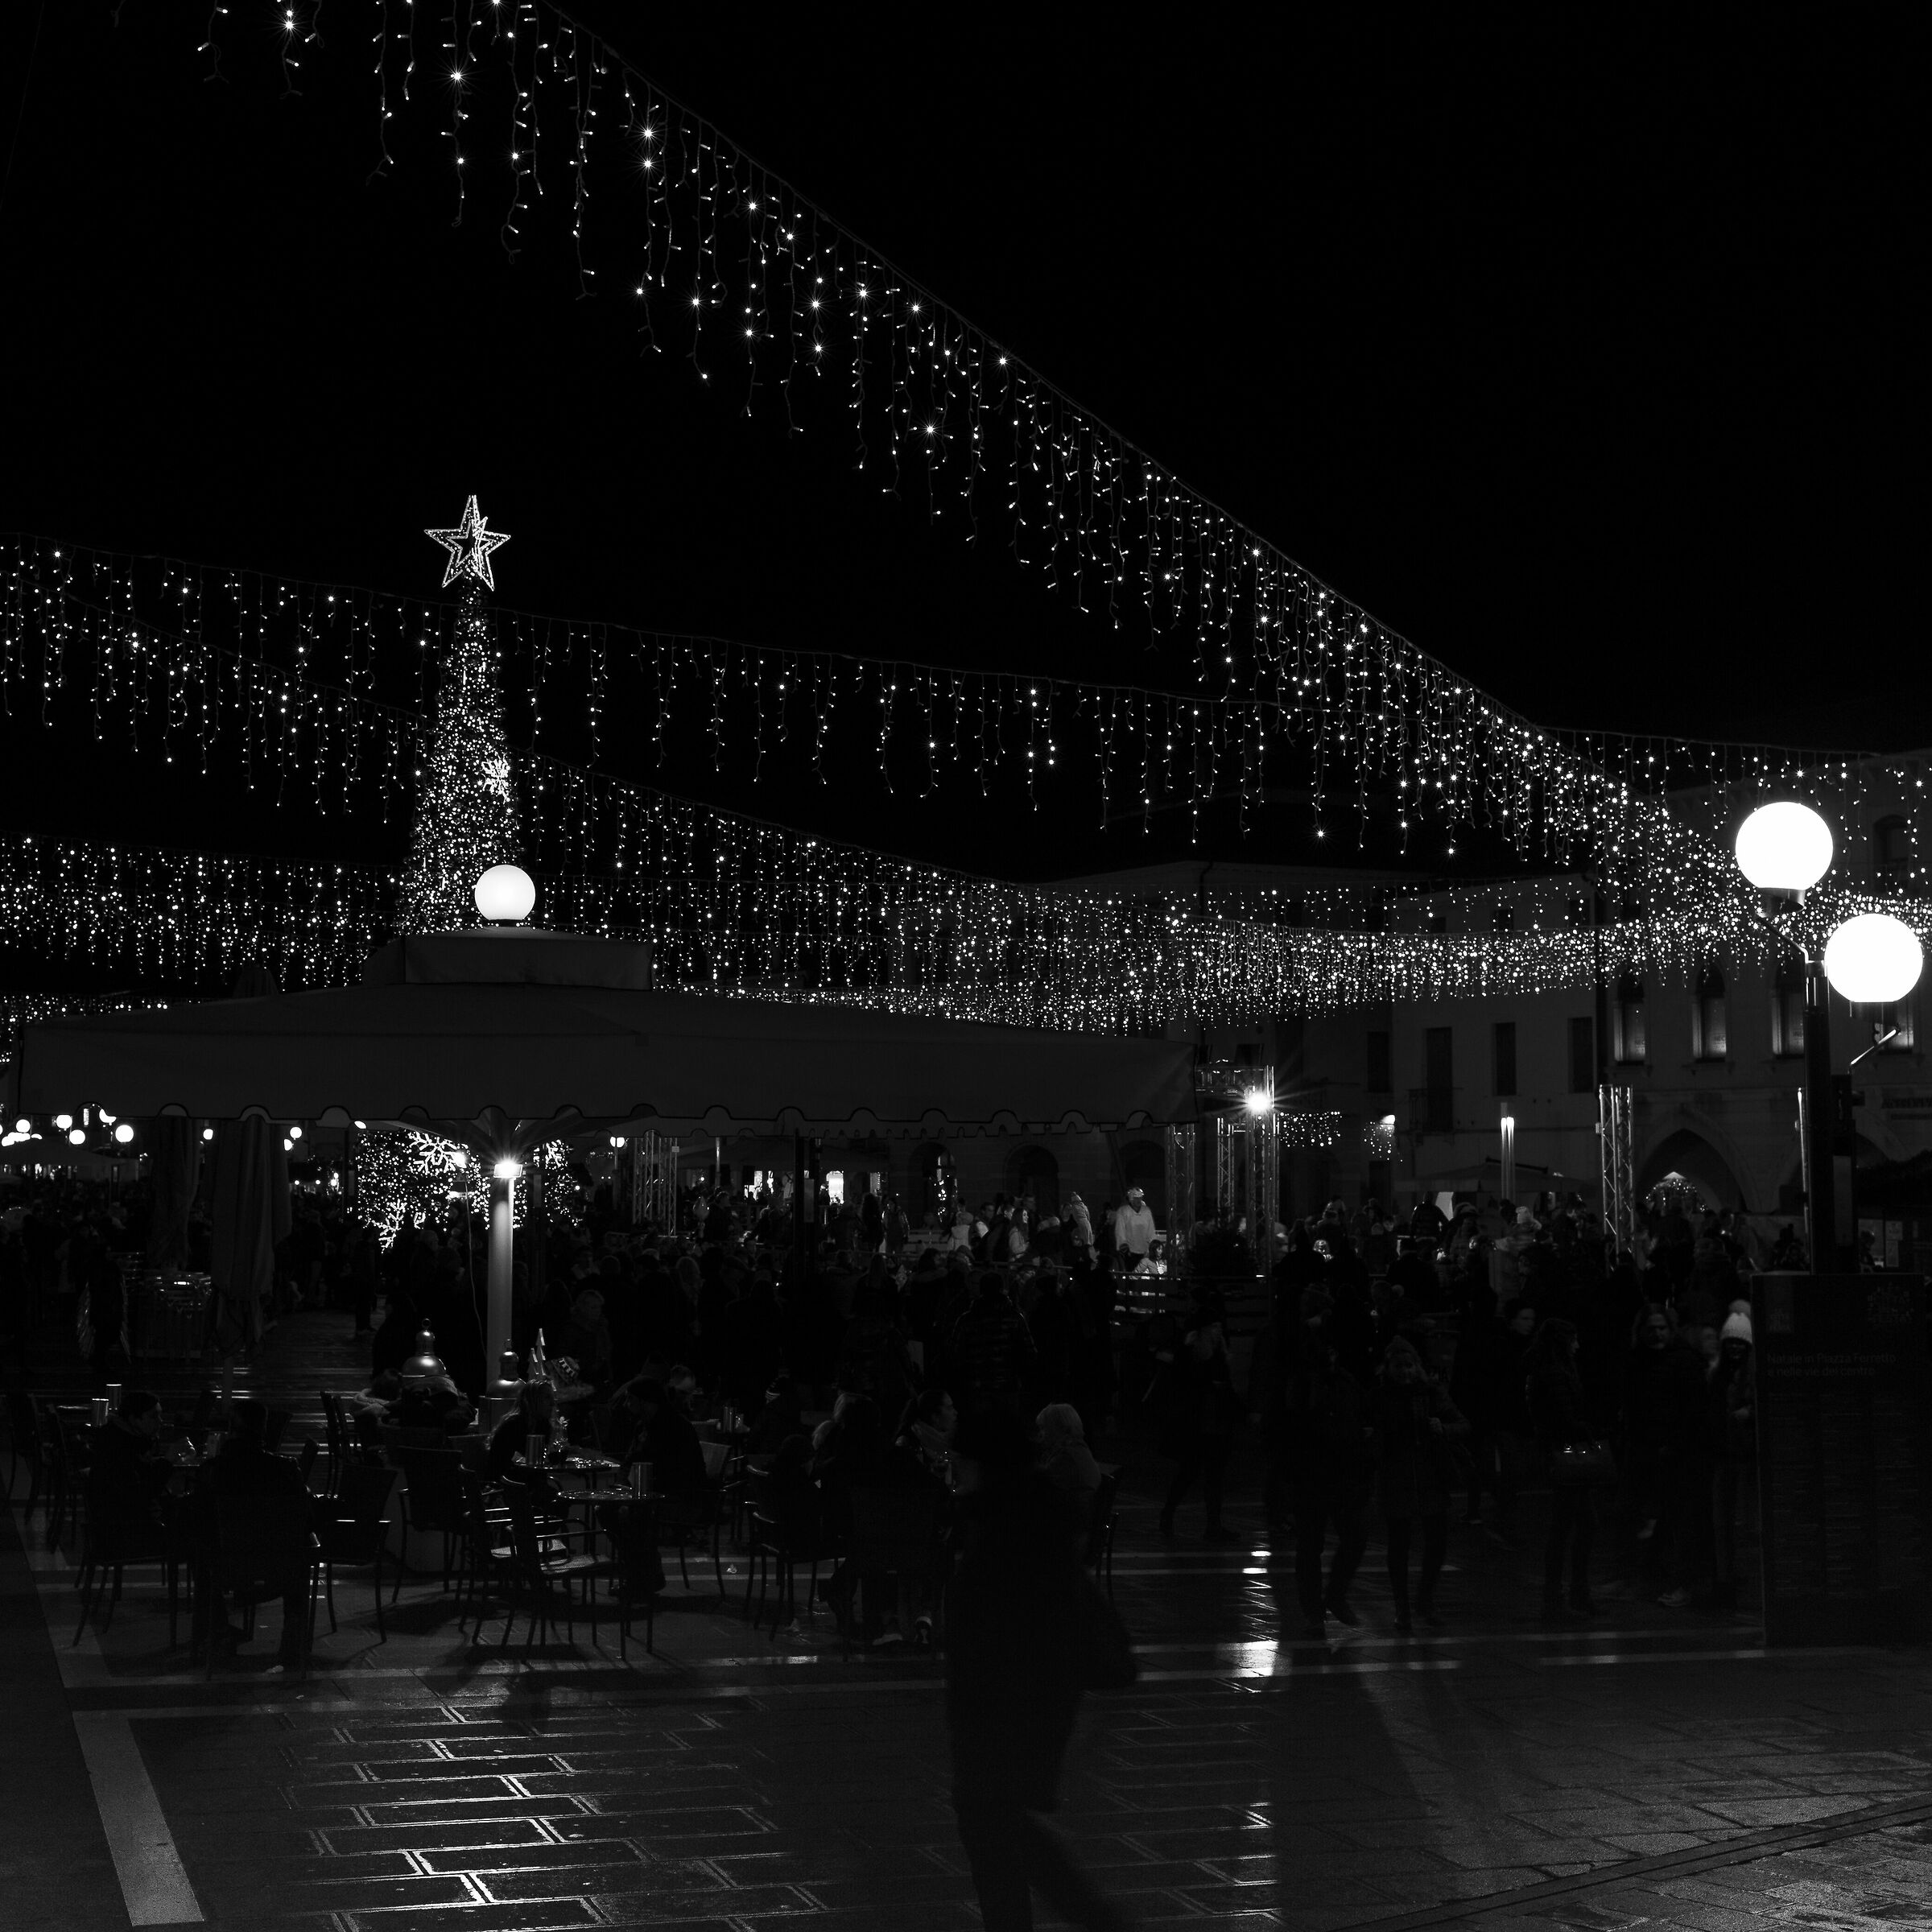 Natale in Piazza Ferretto, Mestre...